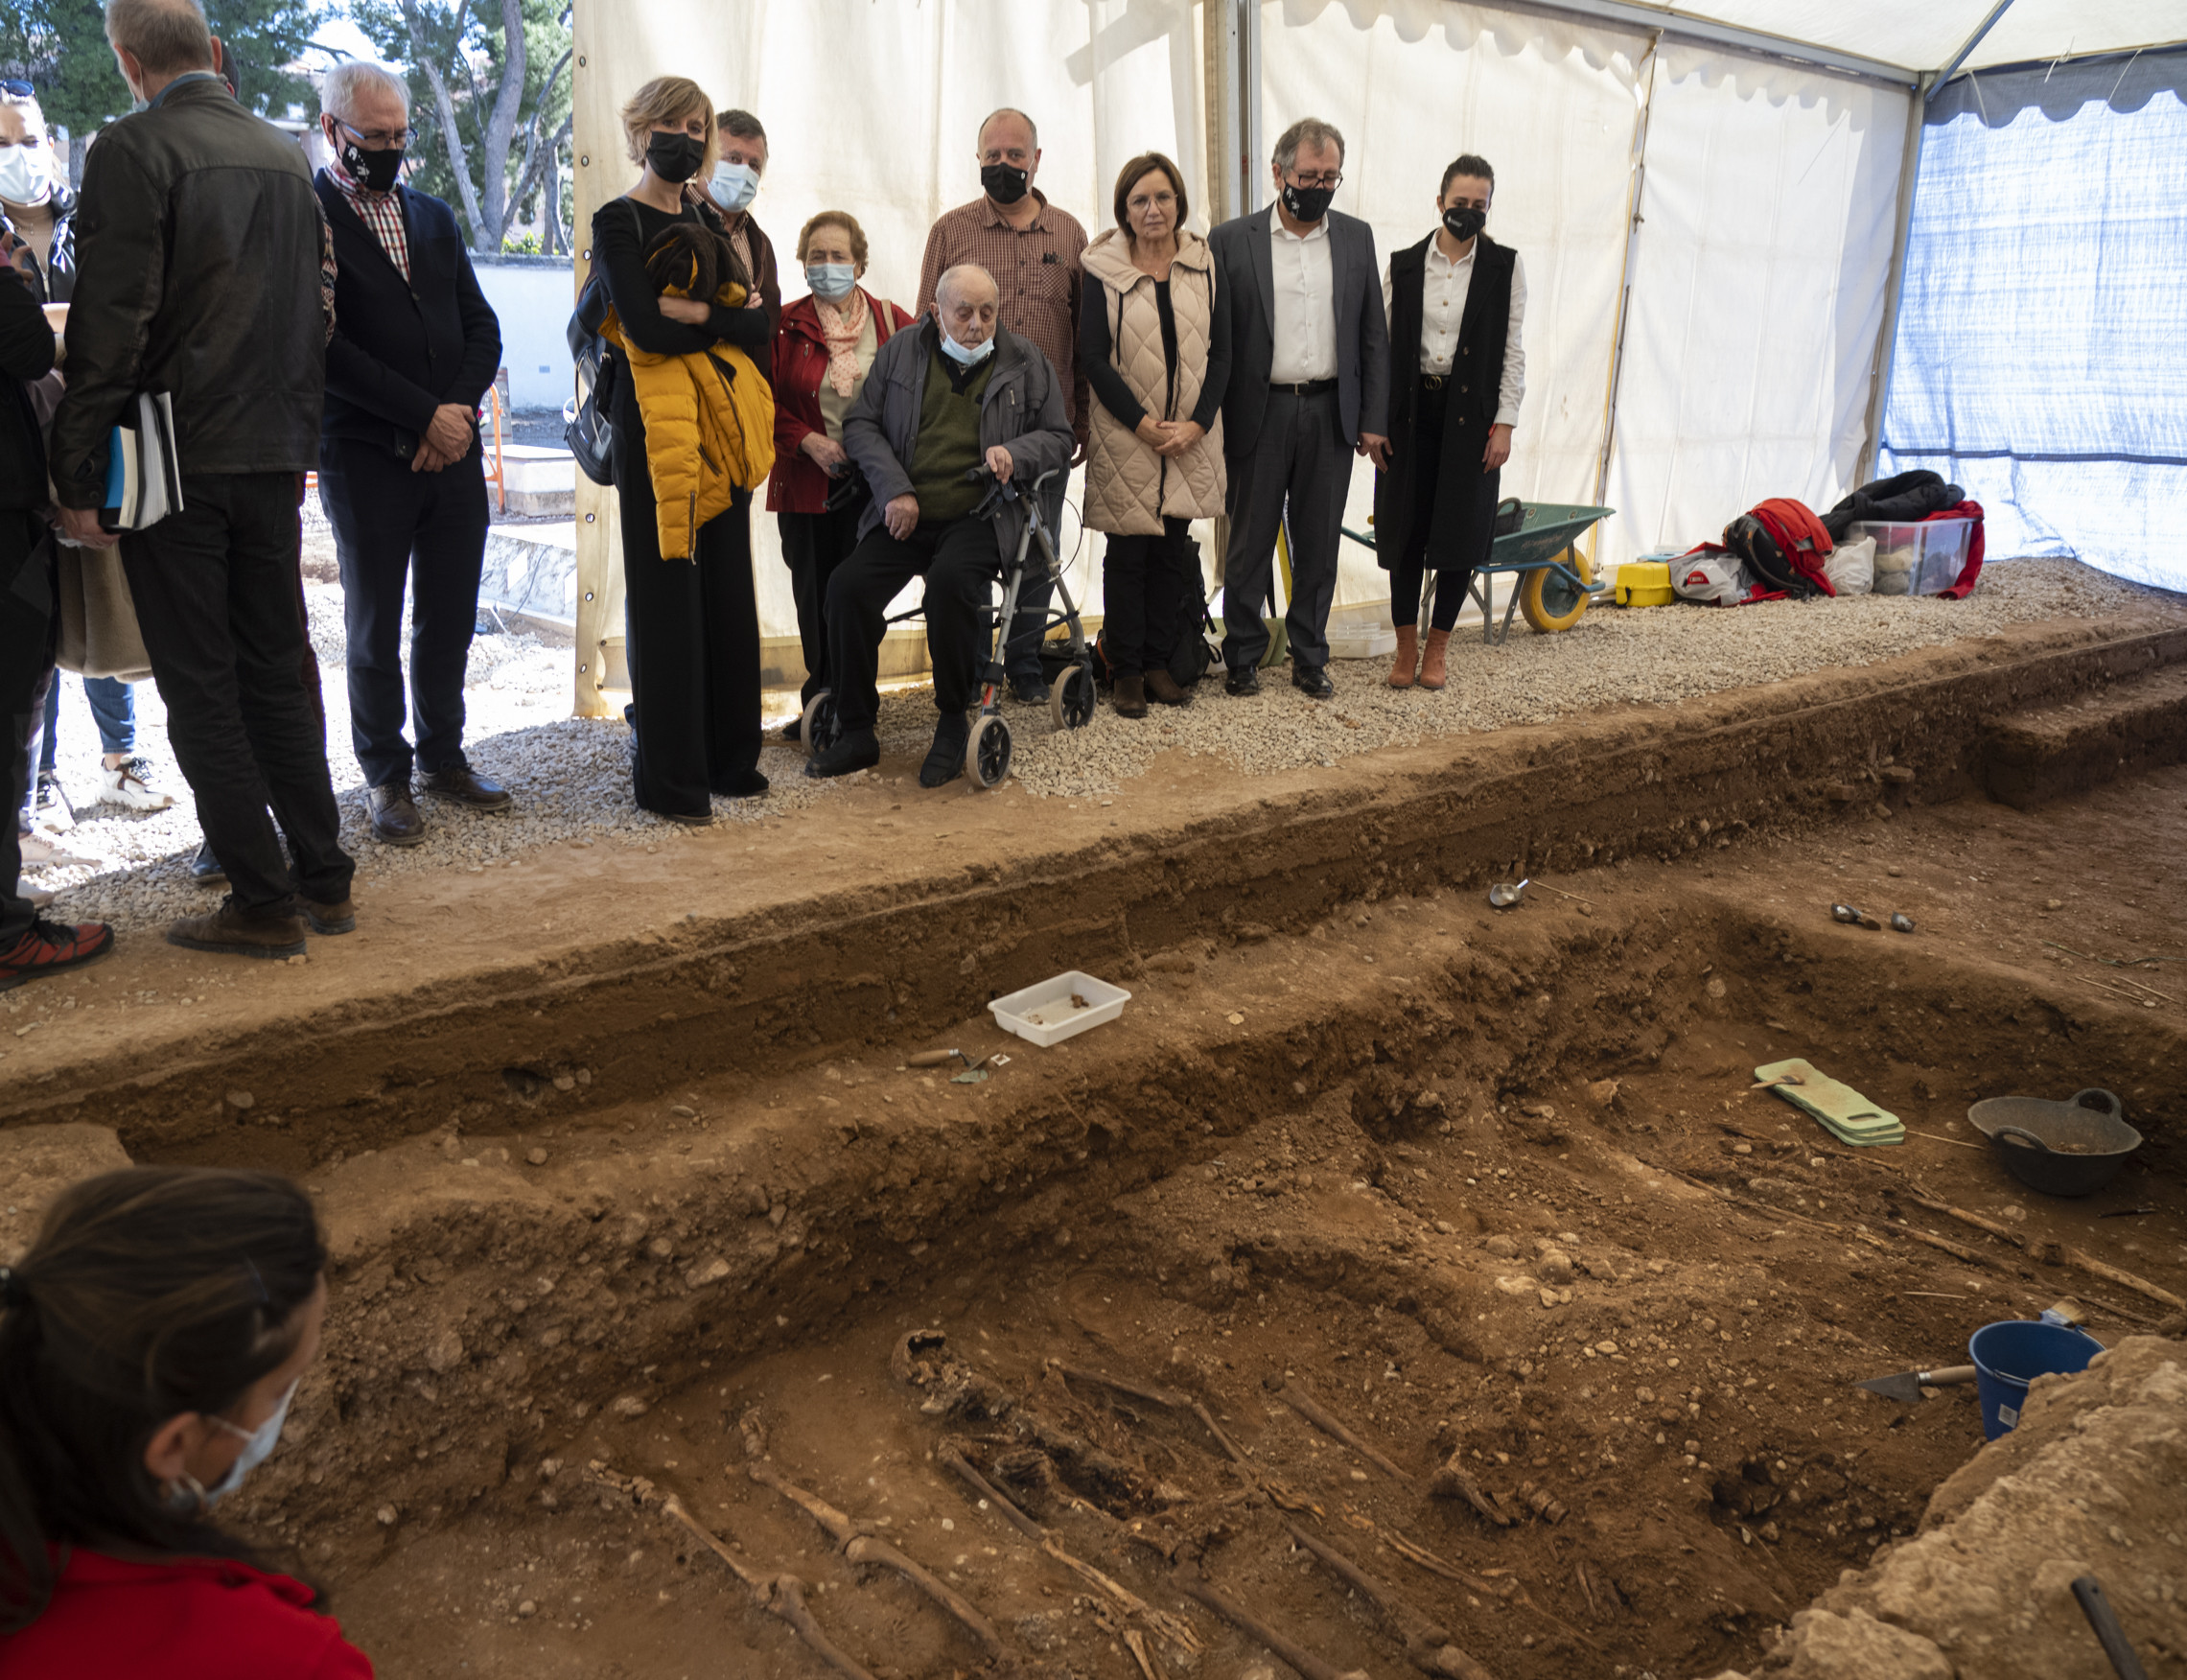 José Martí visita las exhumaciones de fusilados en el cementerio de Castelló financiadas por la Diputación